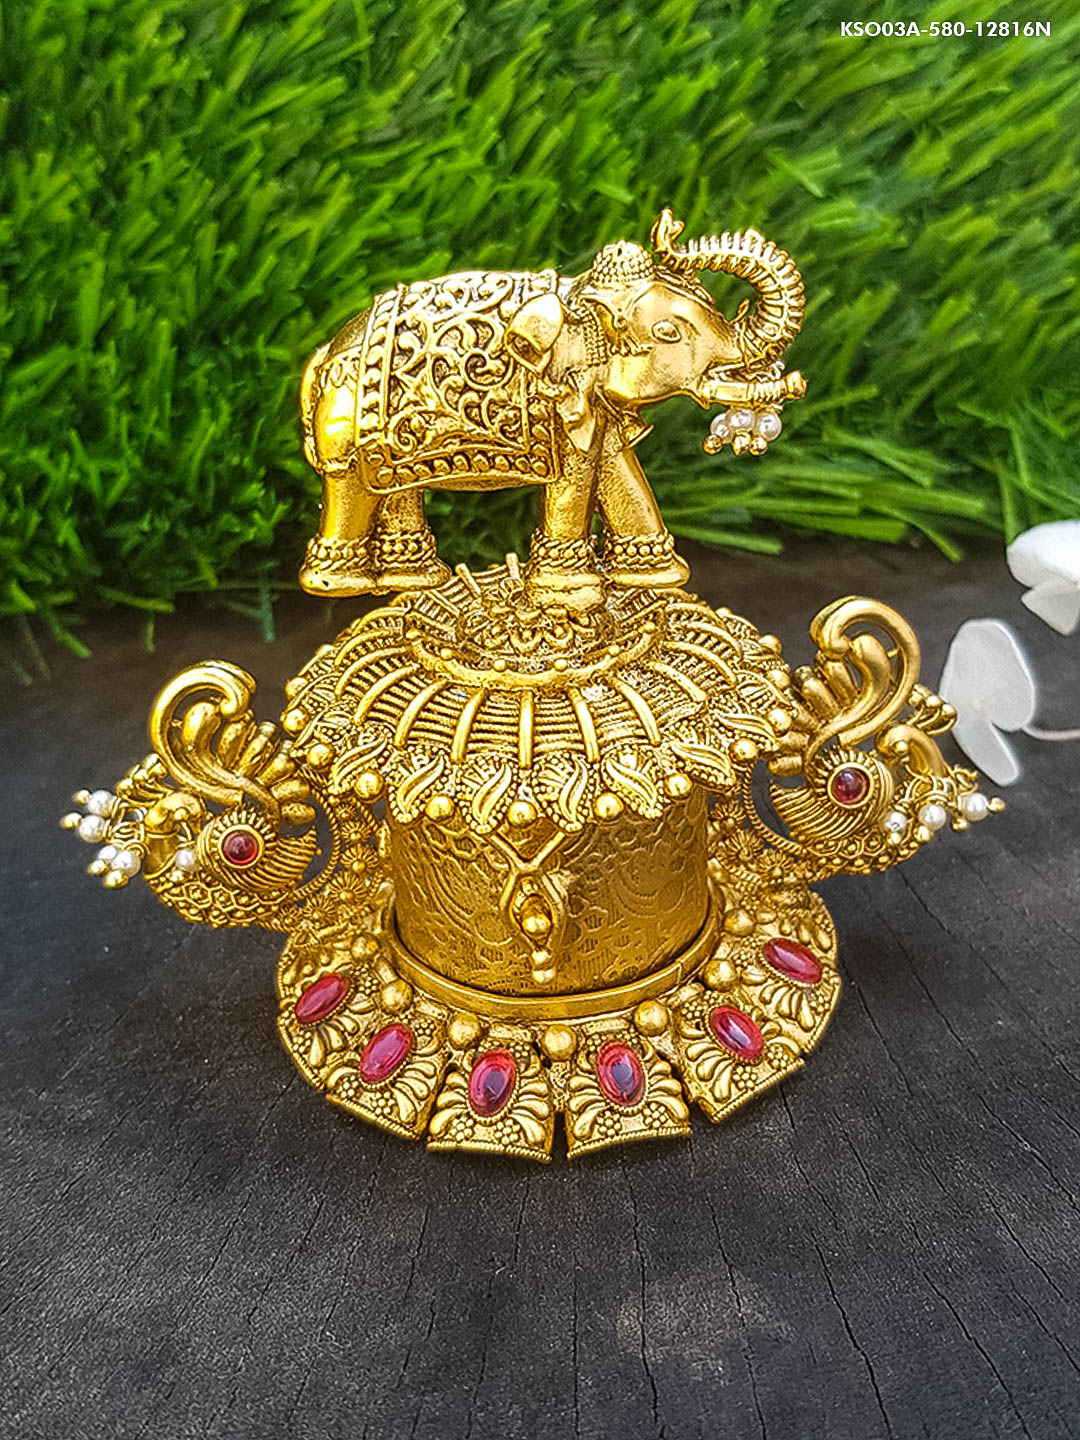 22k Gold Plated Elephant Premium Kum Kum Box best for gifting 12816